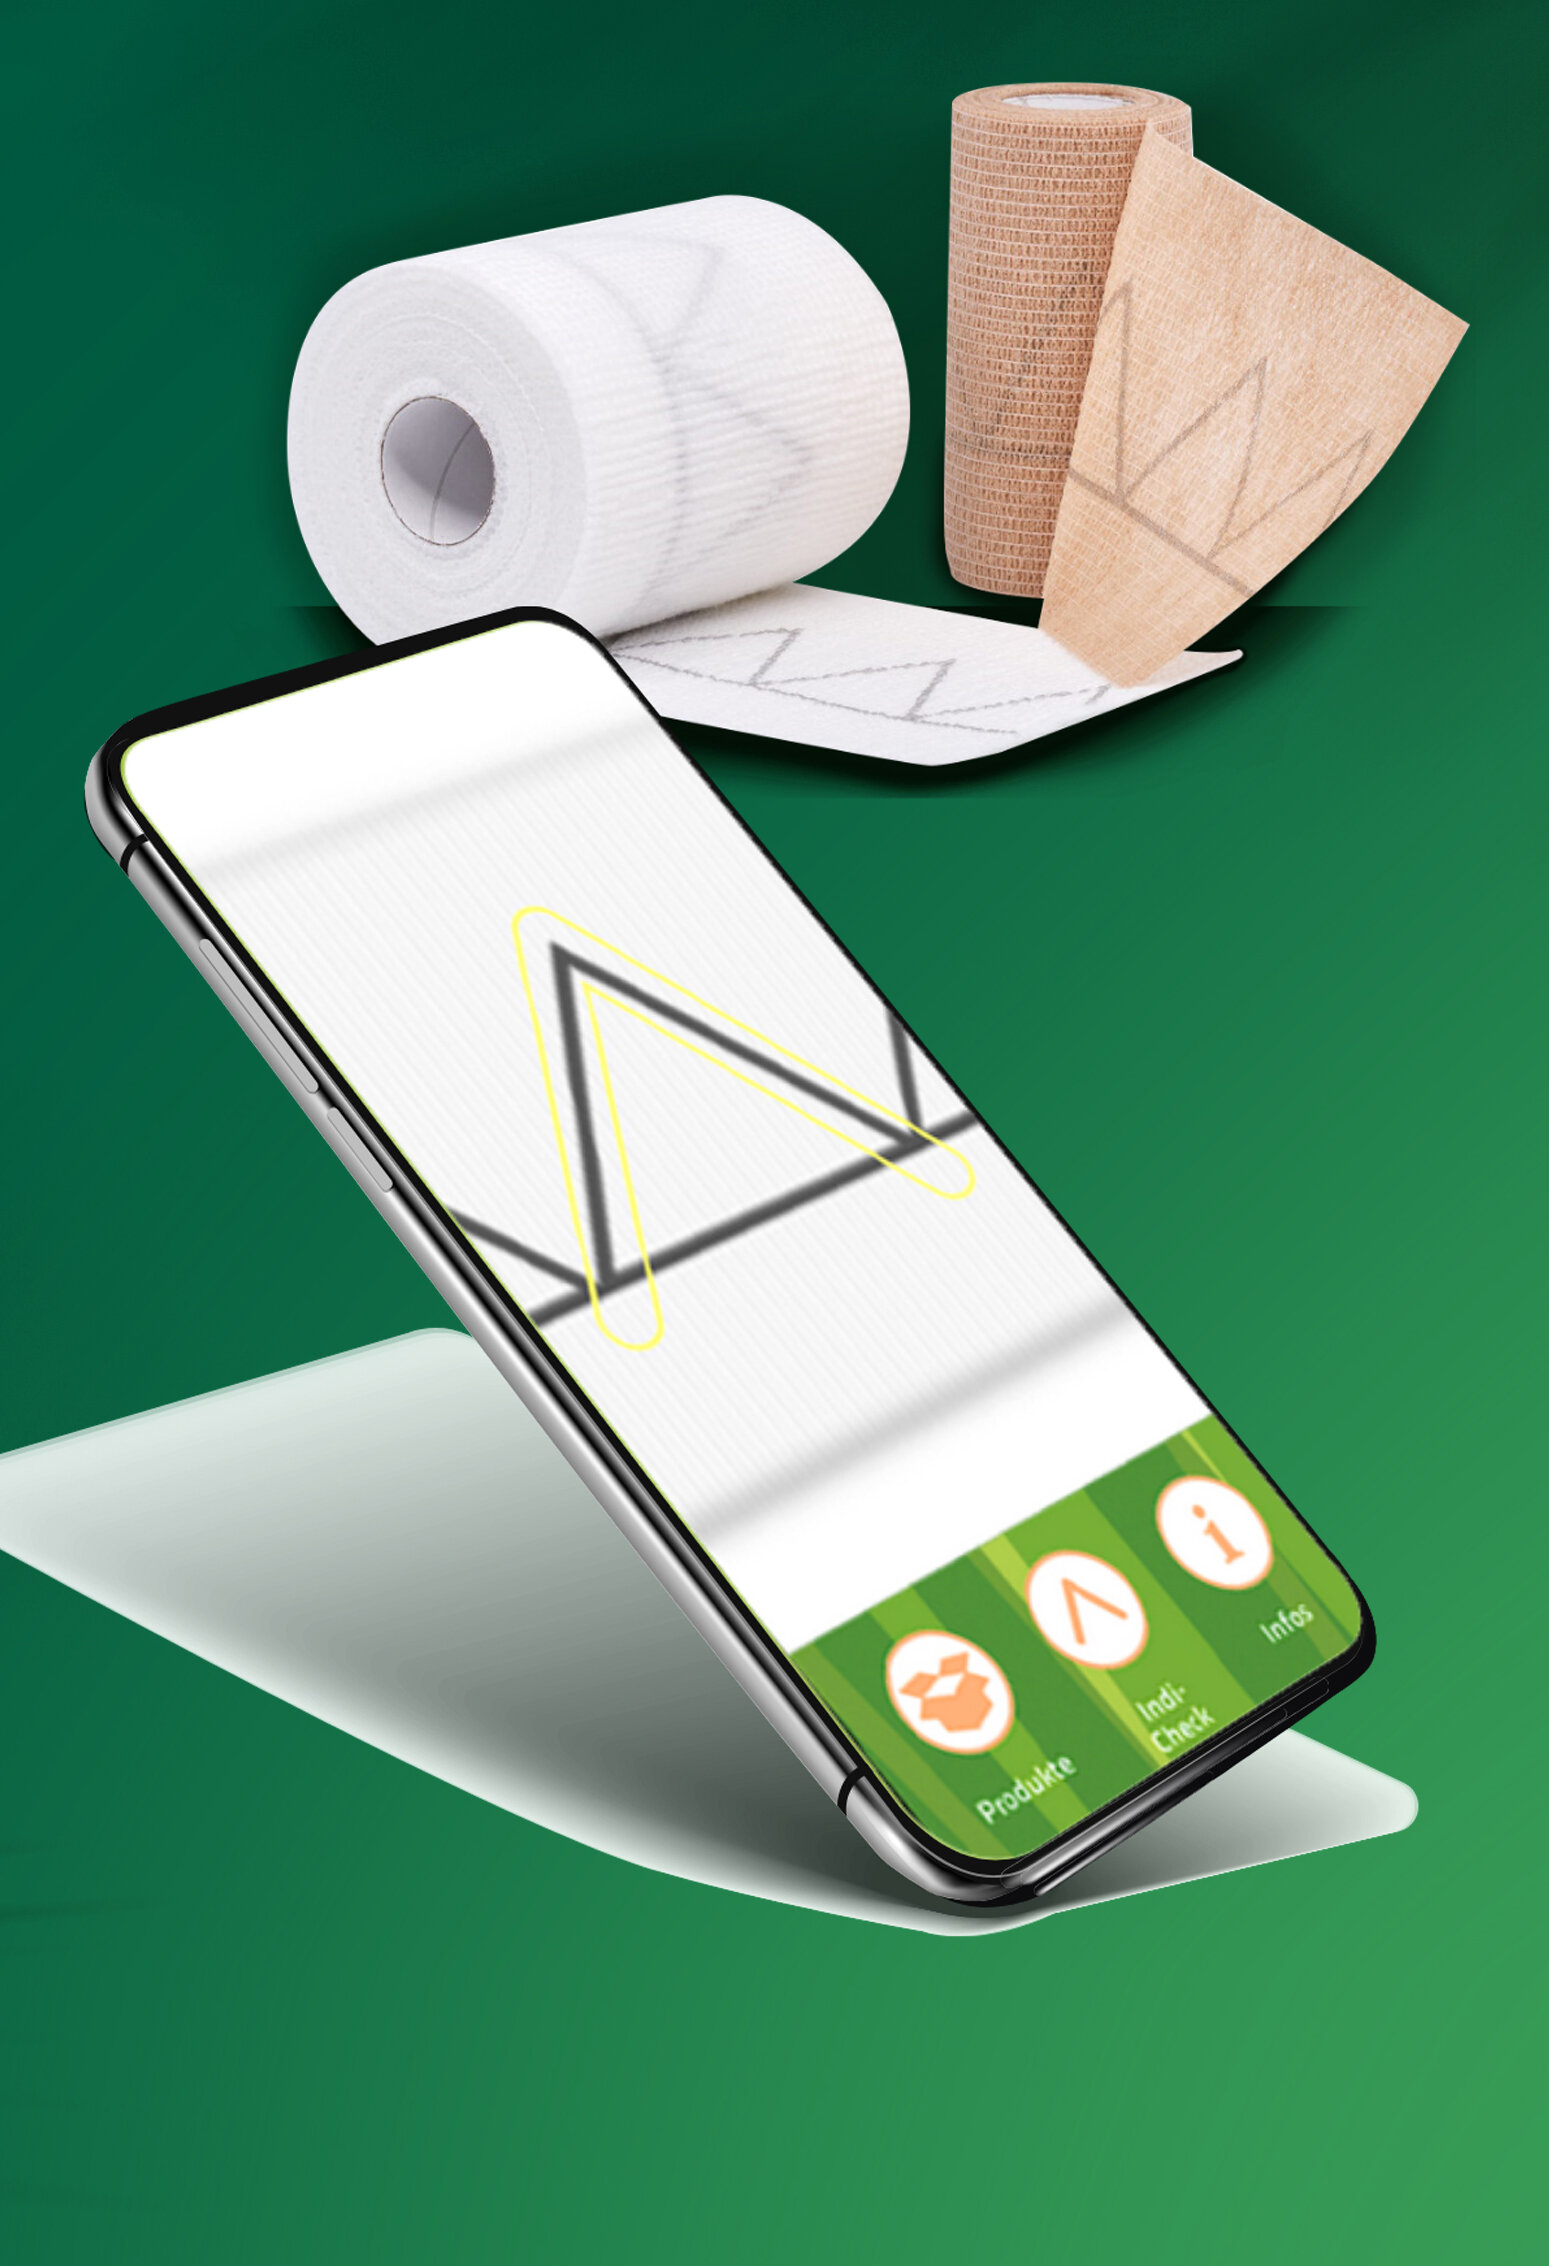 Darstellung der Indi-Check App auf einem Smartphone mit den 2-Komponenten-Kompressionsbinden CompriSave im Hintergrund auf dunkelgrünem Grund mit Bambuswedelschatten.. | © Bamboo Health Care GmbH